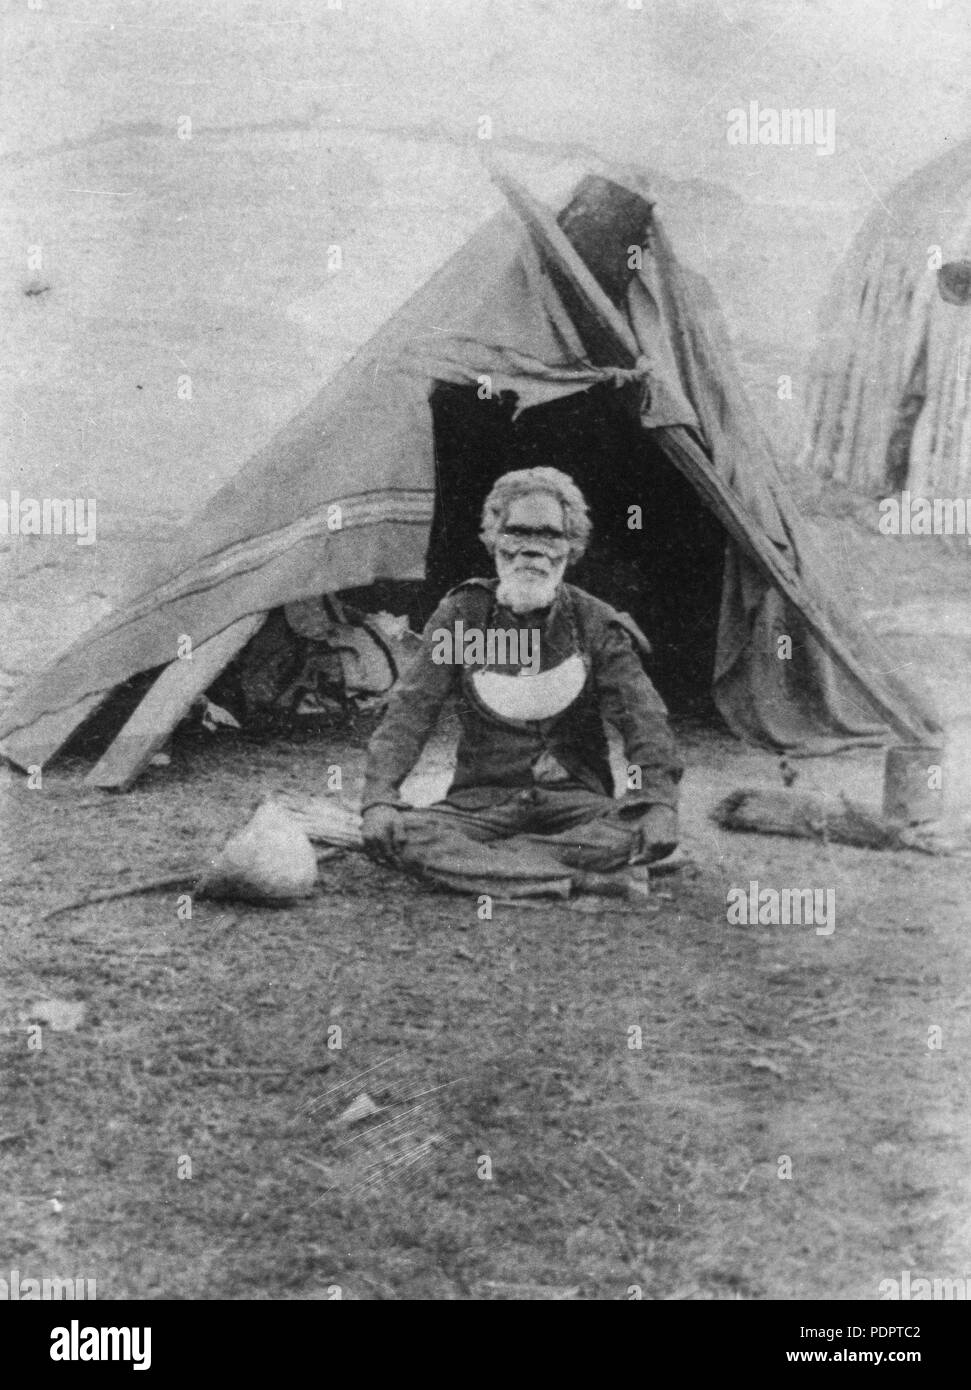 9 uomo aborigena, Bilin Bilin, seduti al di fuori di una tenda alla Deebing Creek missione aborigena, ca. 1900 Foto Stock